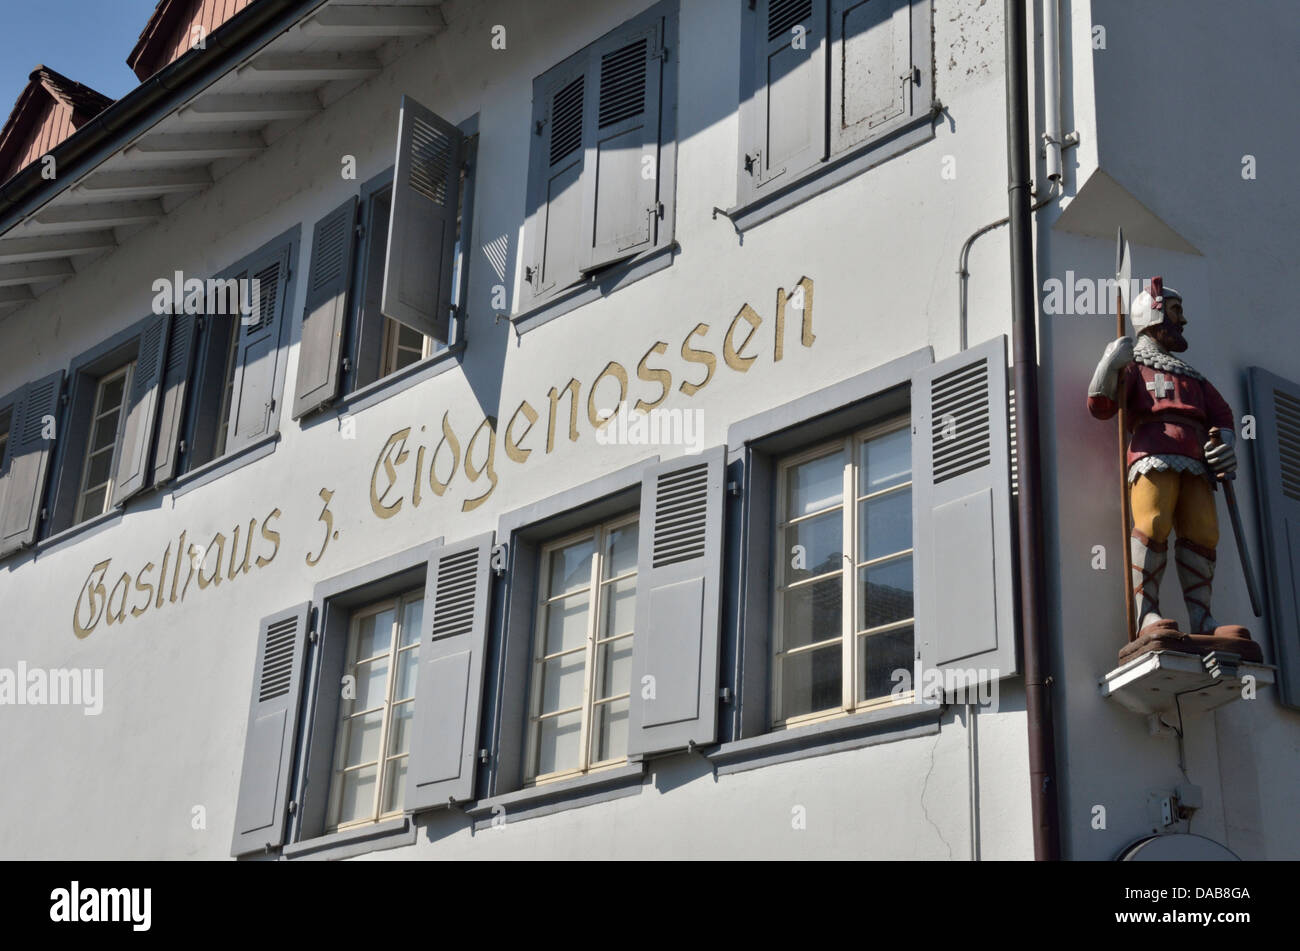 Lindbi Pub zum Eidgenosse, Sissach, Basel-Landschaft, Switzerland. Stock Photo